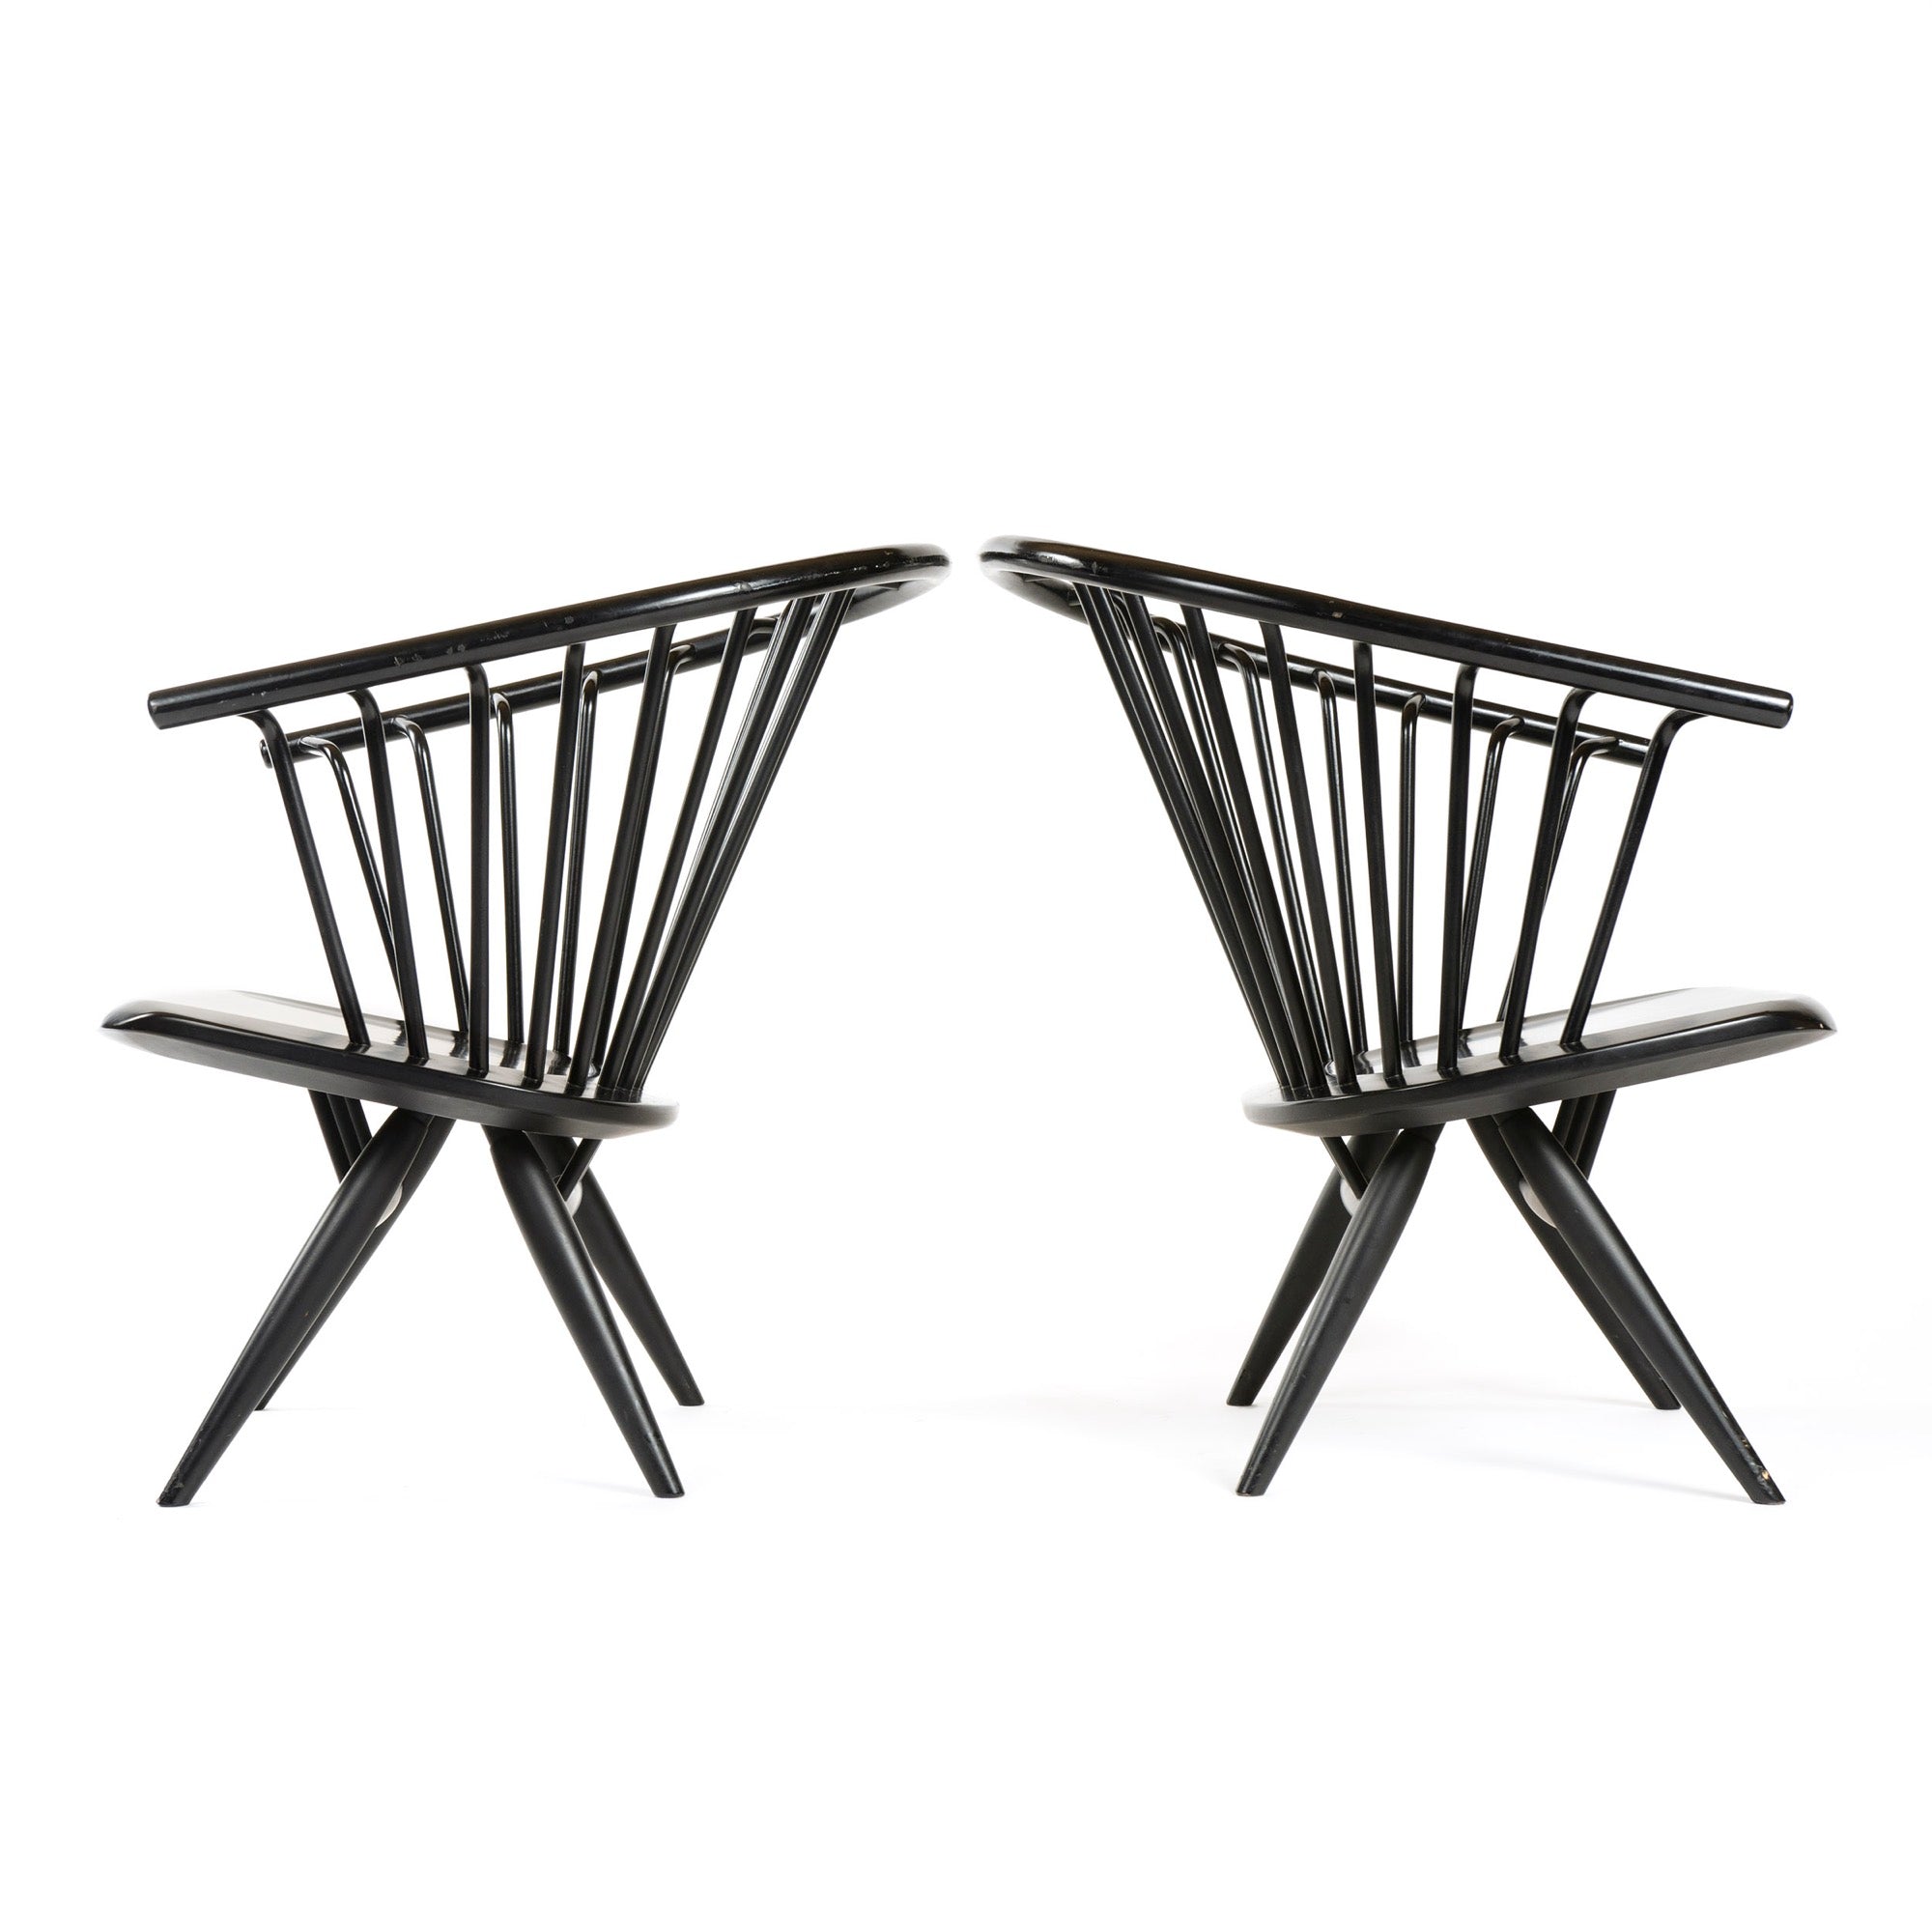 Pair of Crinolette Chair by Ilmari Tapiovaara for Asko, 1962